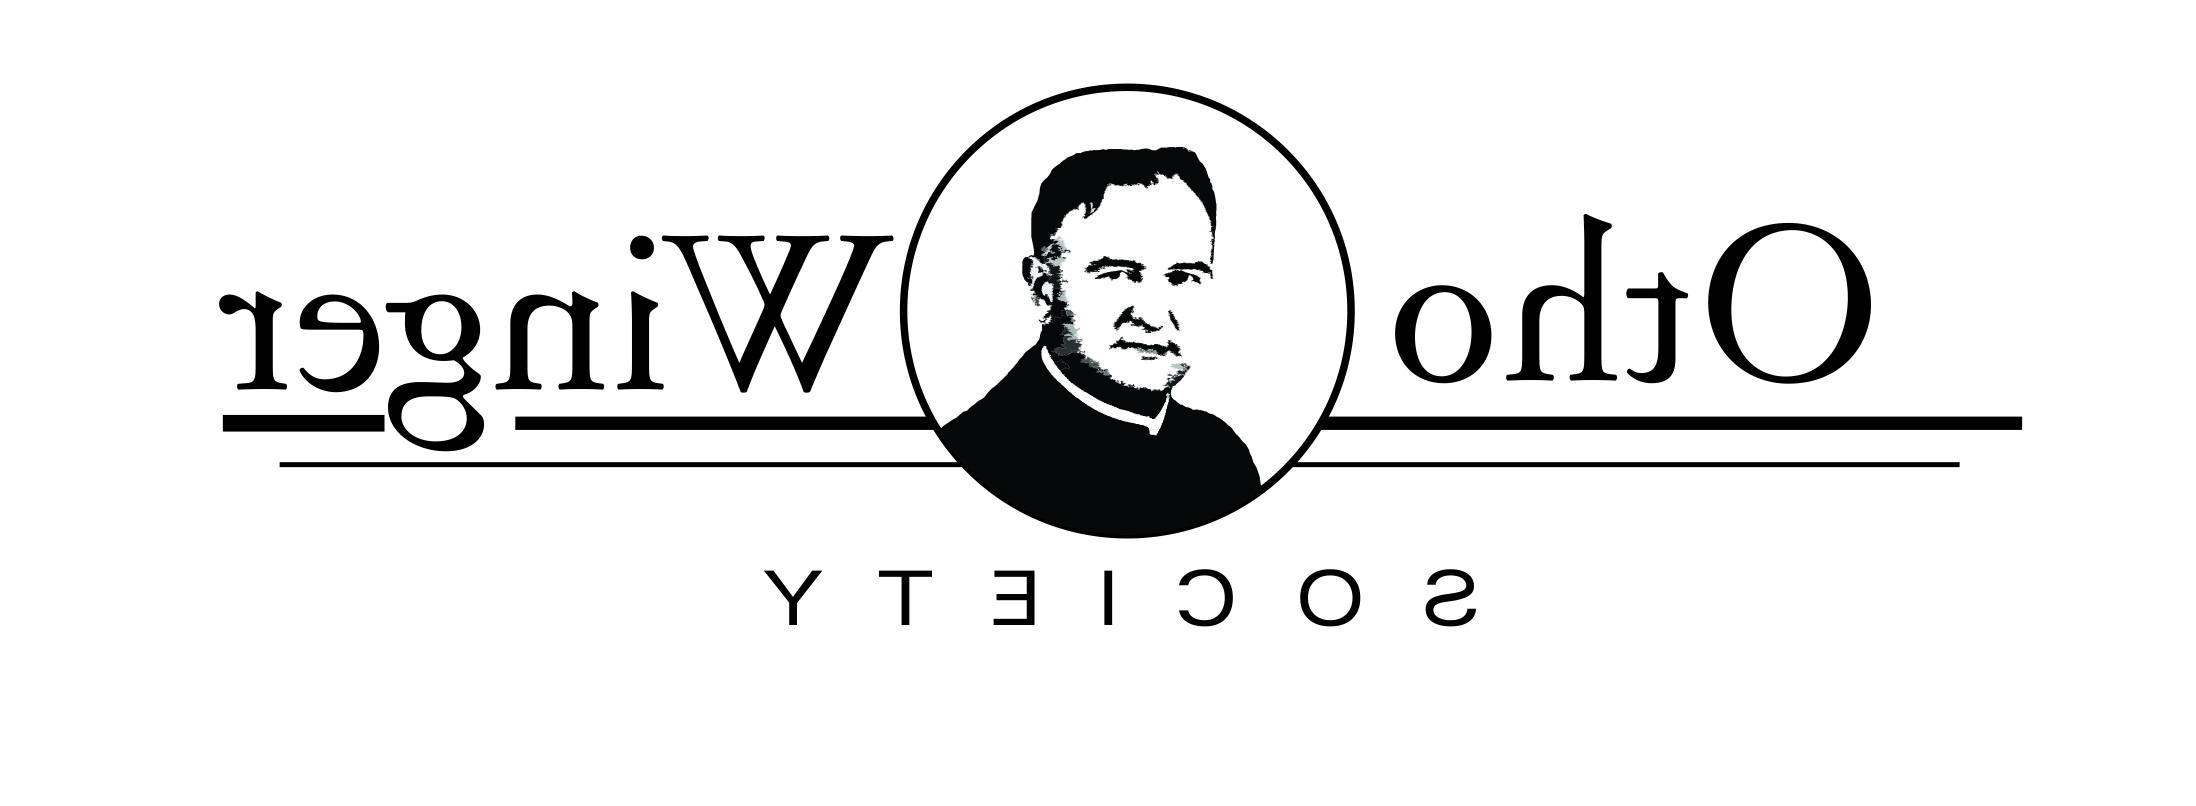 Otho Winger Society Logo 2023